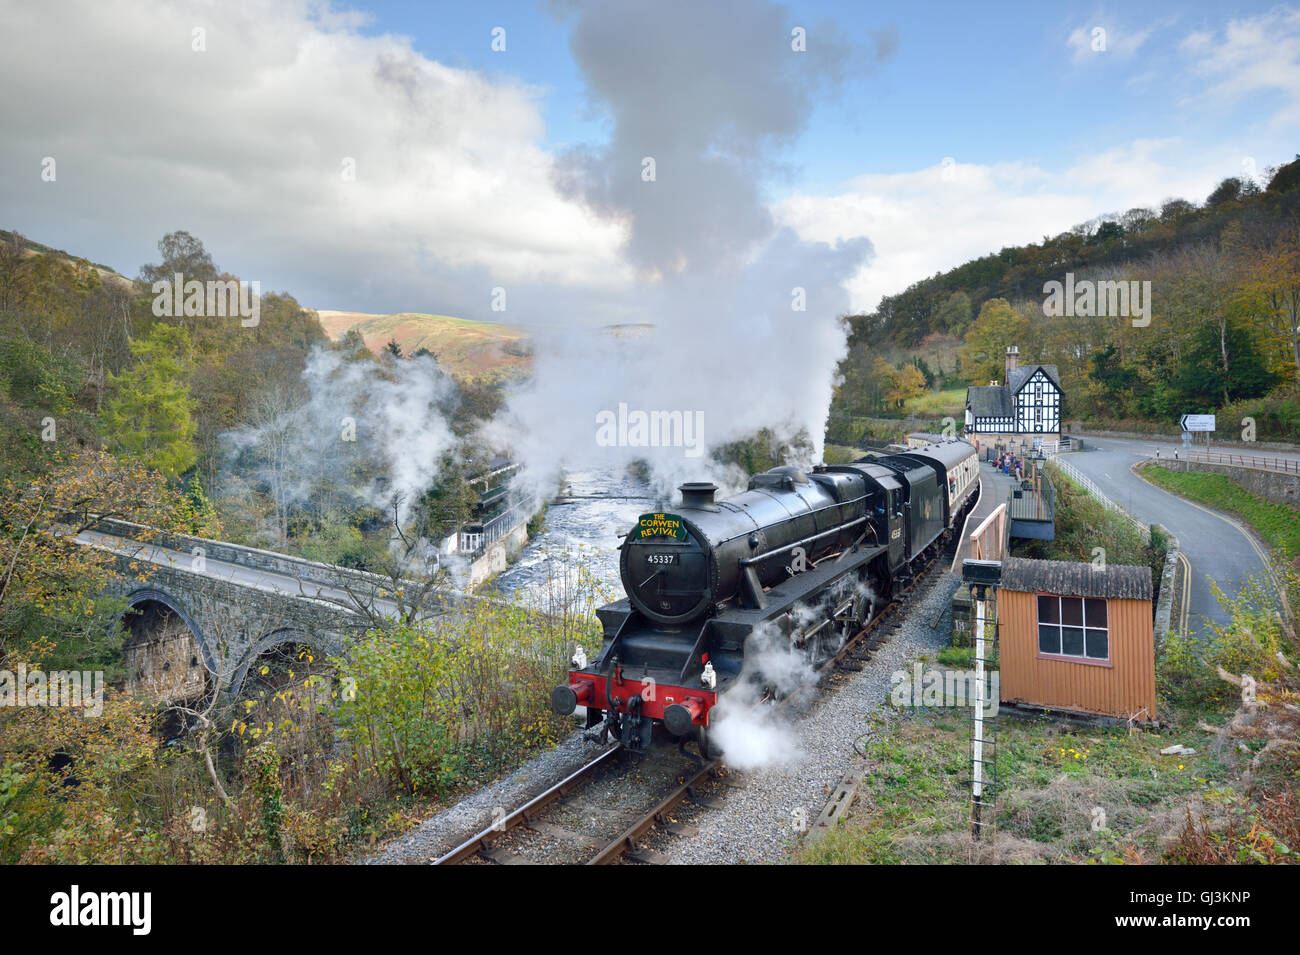 Le train à vapeur de la Renaissance Corwen à Berwyn, Llangollen, sur la ligne du patrimoine de Llangollen, au nord du Pays de Galles, Royaume-Uni Banque D'Images